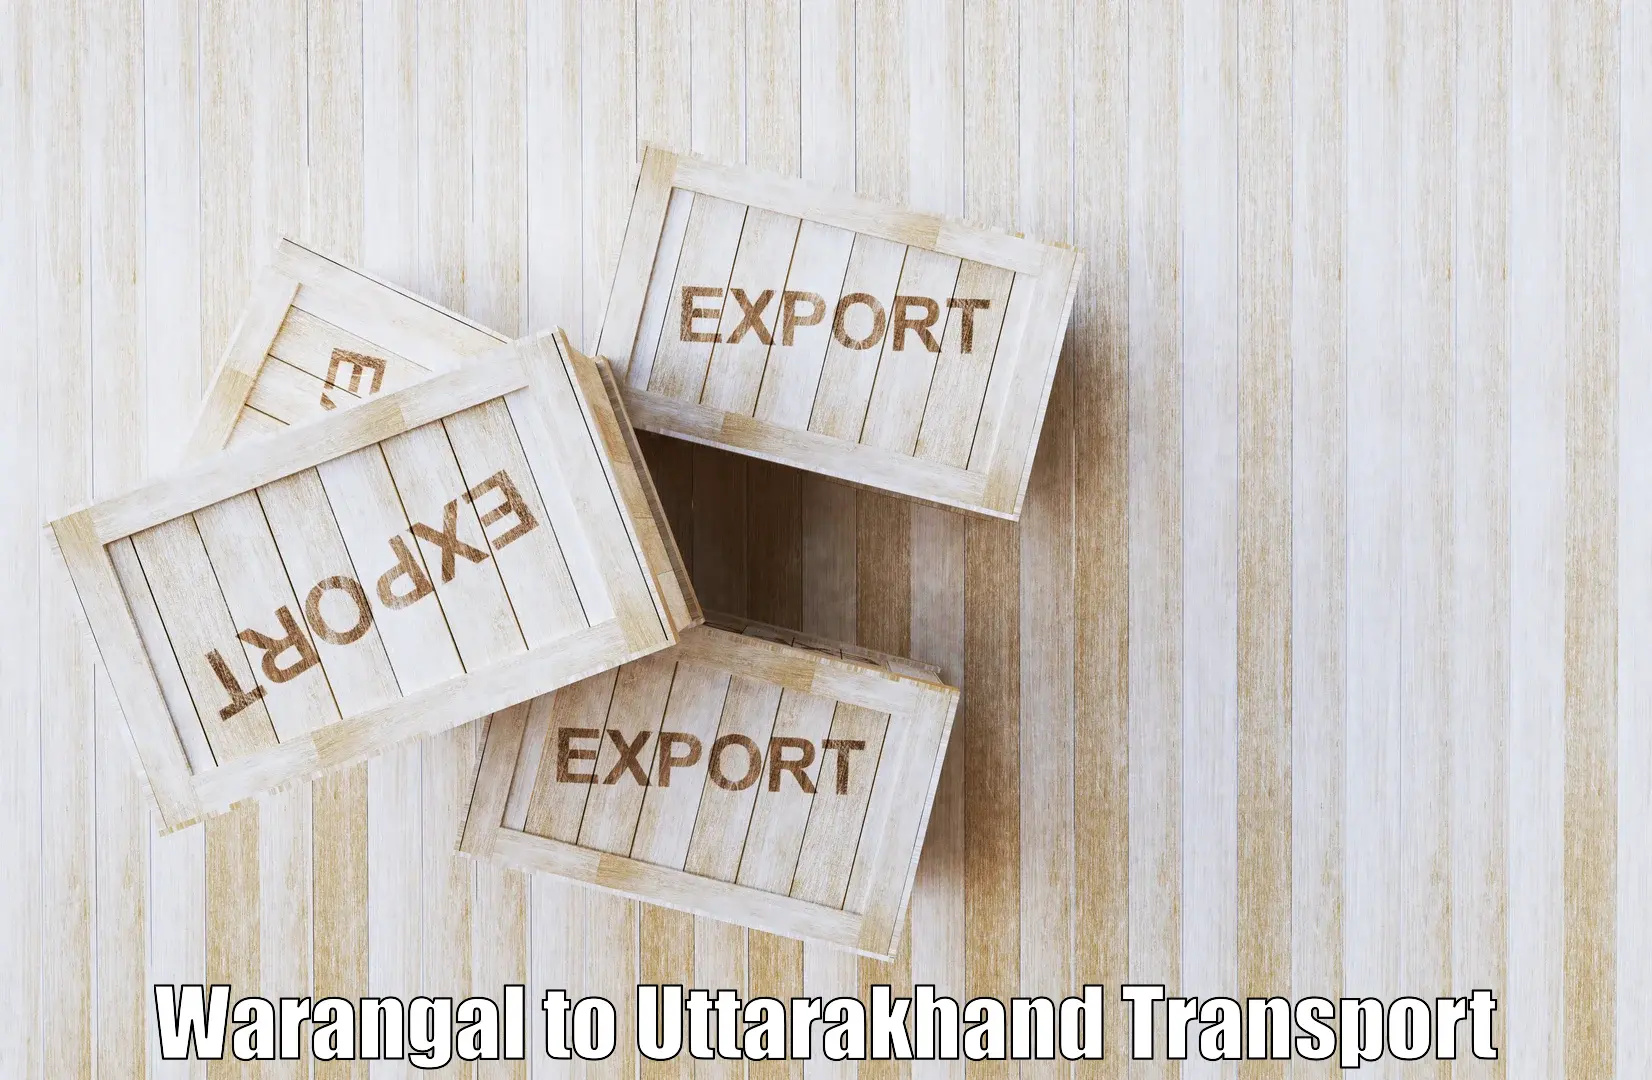 Nearest transport service Warangal to Khatima